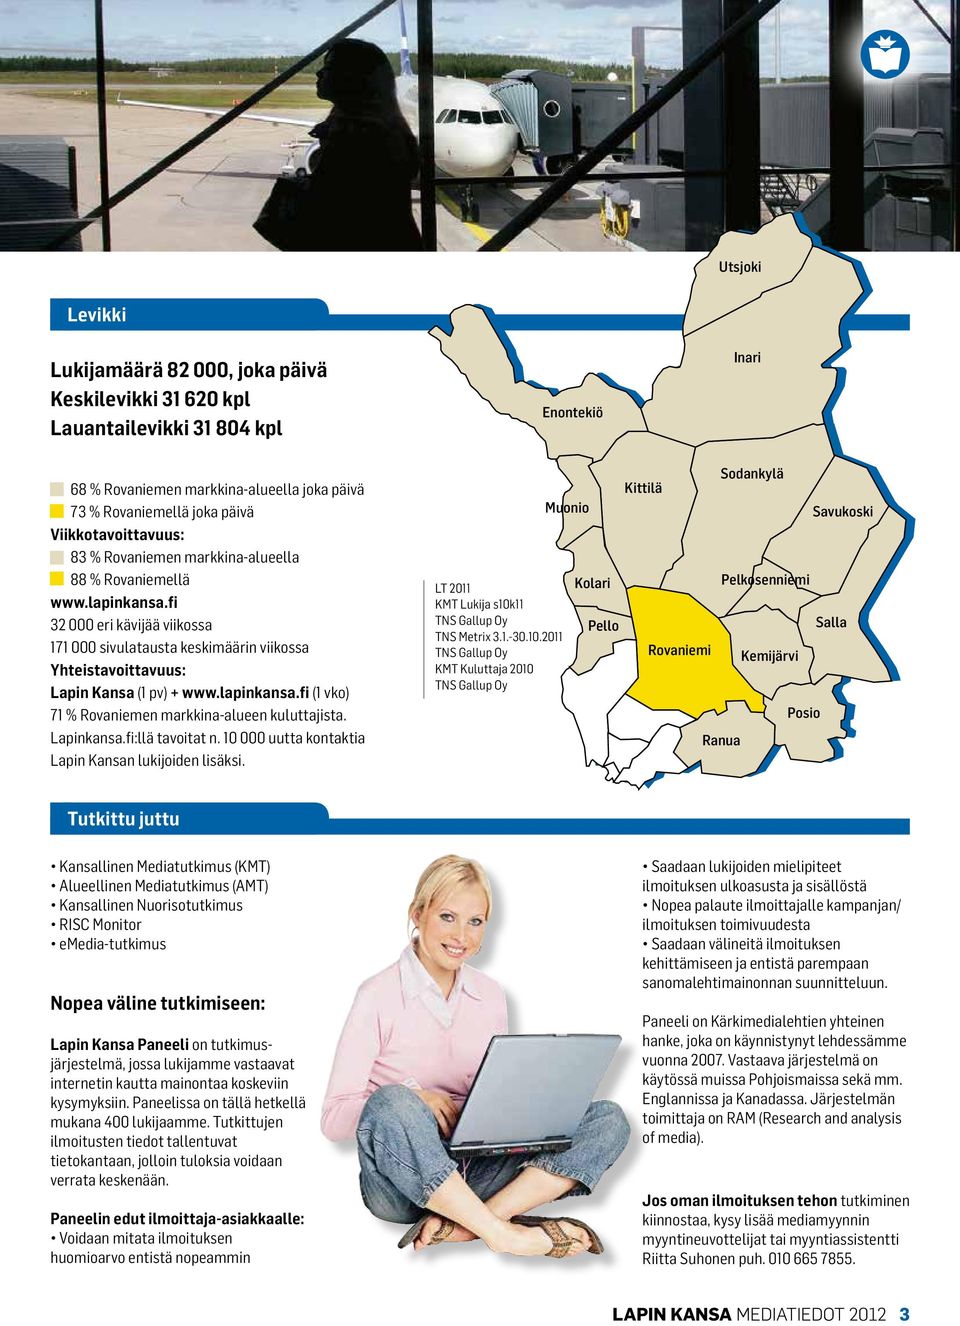 fi 32 000 eri kävijää viikossa 171 000 sivulatausta keskimäärin viikossa Yhteistavoittavuus: Lapin Kansa (1 pv) + www.lapinkansa.fi (1 vko) 71 % Rovaniemen markkina-alueen kuluttajista. Lapinkansa.